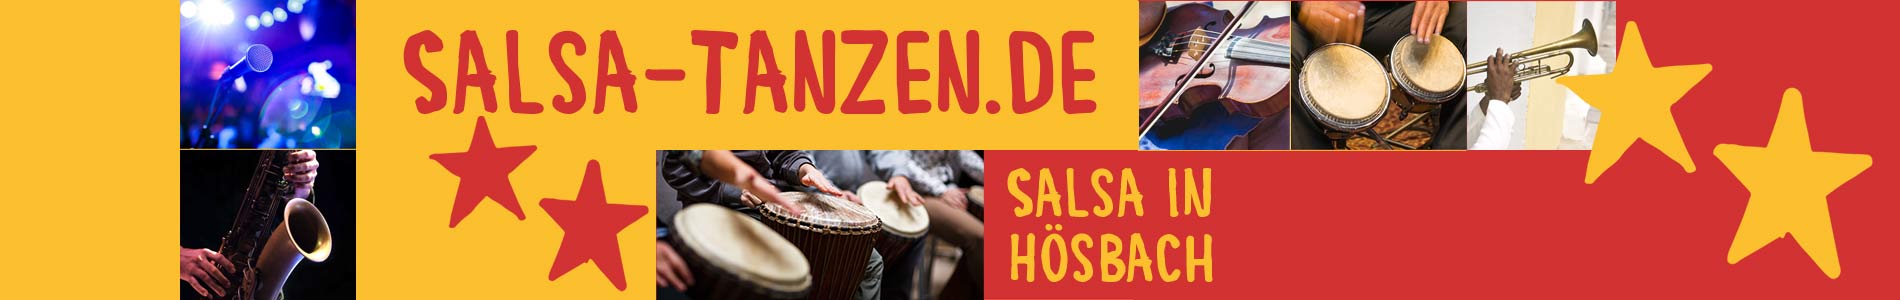 Salsa in Hösbach – Salsa lernen und tanzen, Tanzkurse, Partys, Veranstaltungen